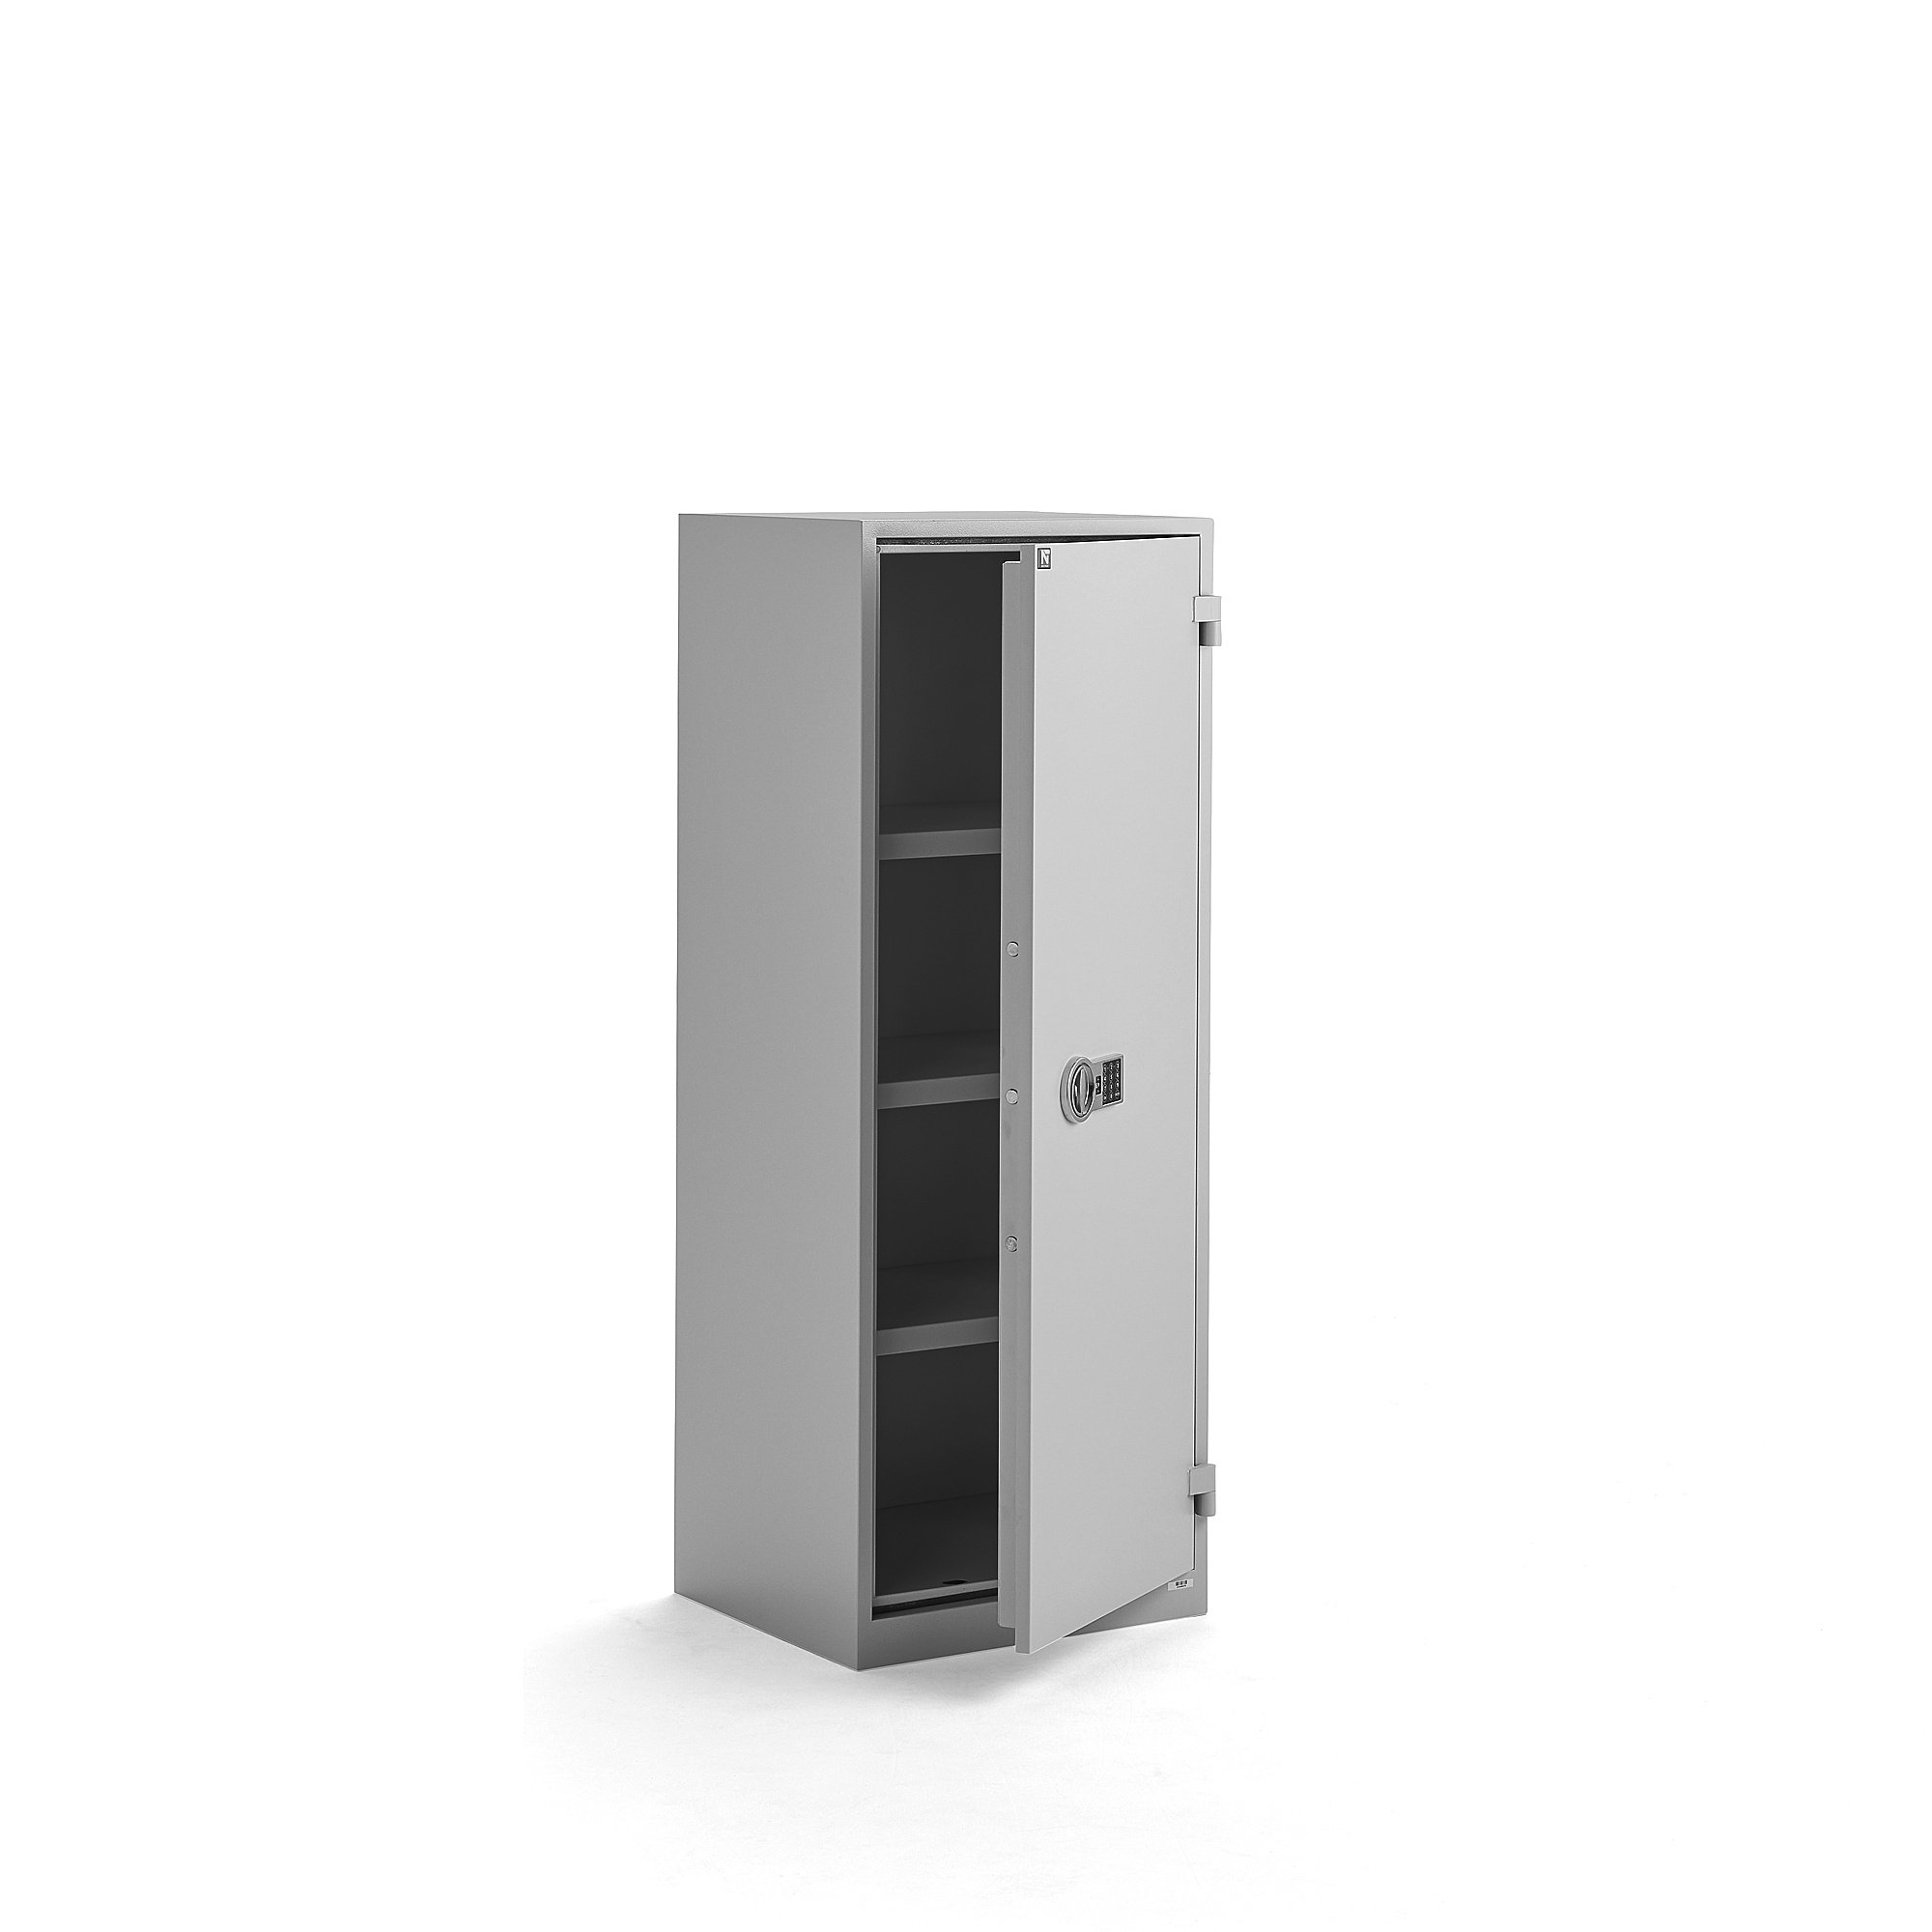 Bezpečnostní skříň ARMOUR, s protipožární izolací, 1600x600x520 mm, elektronický kódový zámek